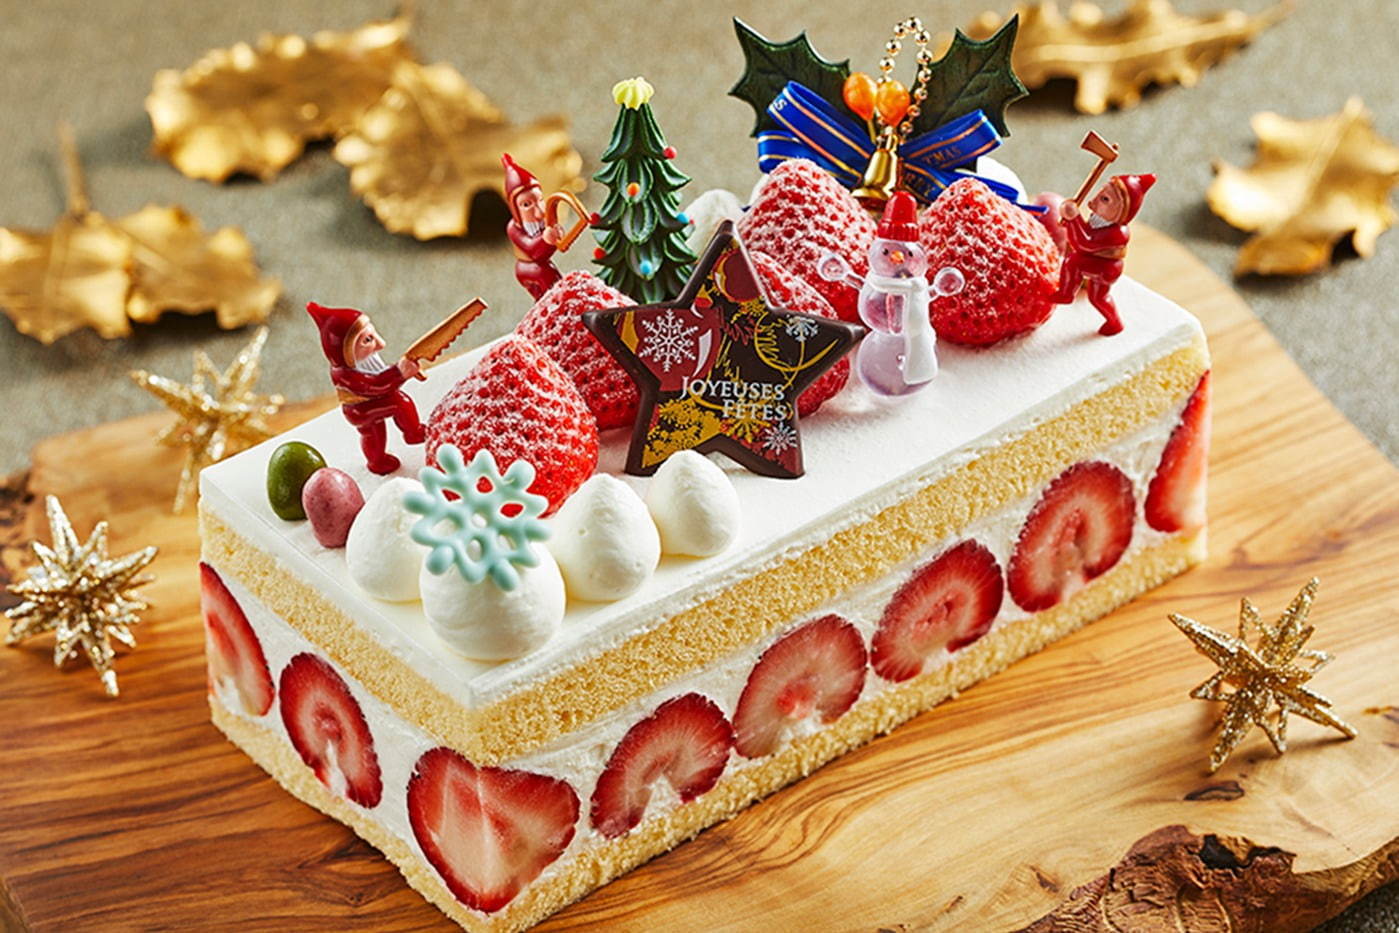 クリスマスケーキ特集 全国版 予約必至 高級ホテル 人気スイーツブランドが贈る絶品ケーキ ファッションプレス